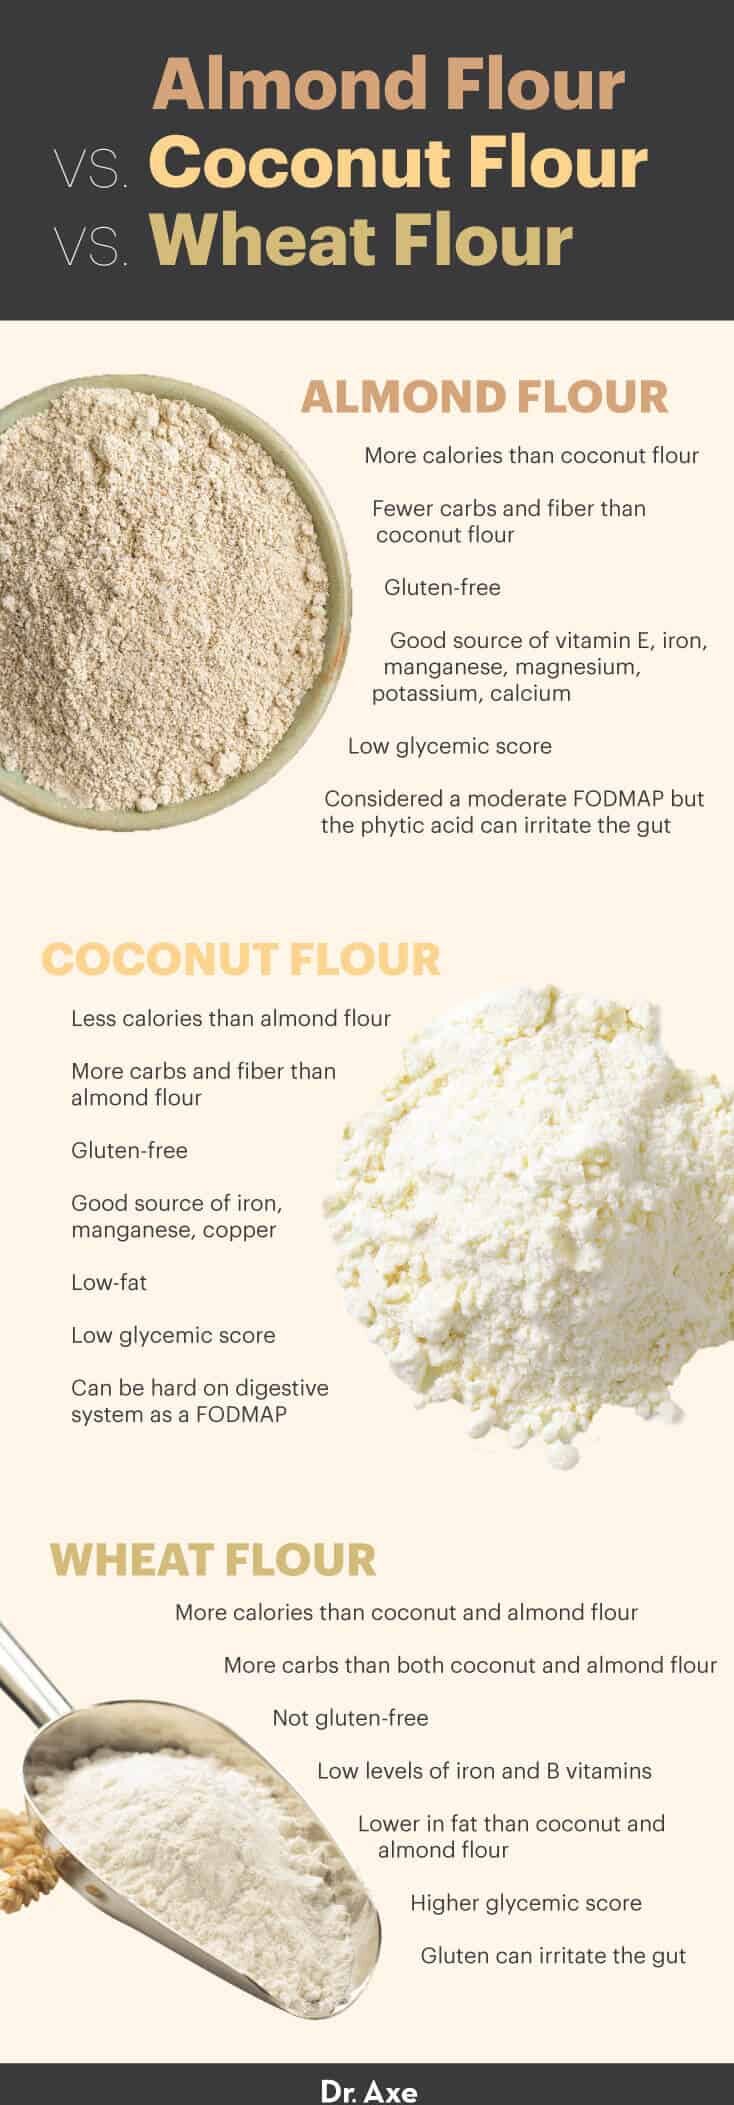 Almond flour vs. coconut flour vs. wheat flour - Dr. Axe